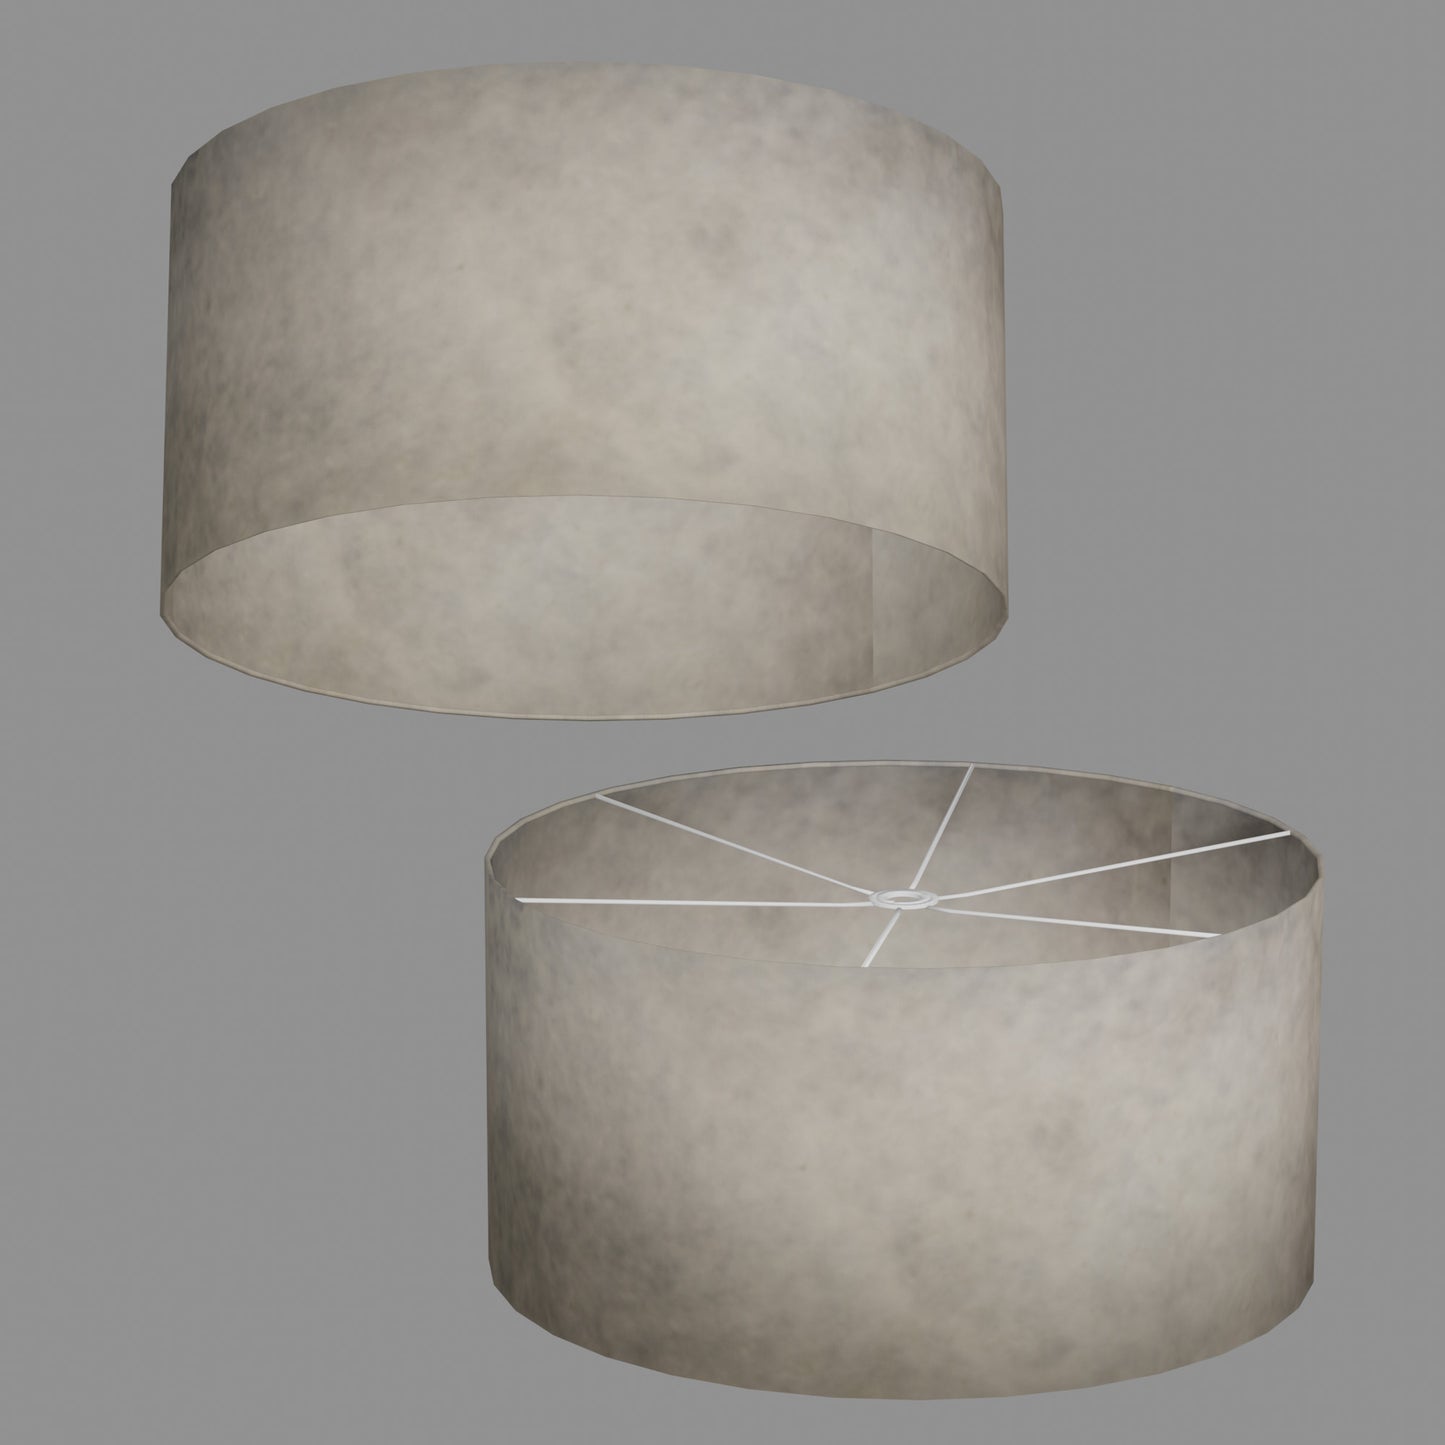 Drum Lamp Shade - P54 - Natural Lokta, 60cm(d) x 30cm(h)